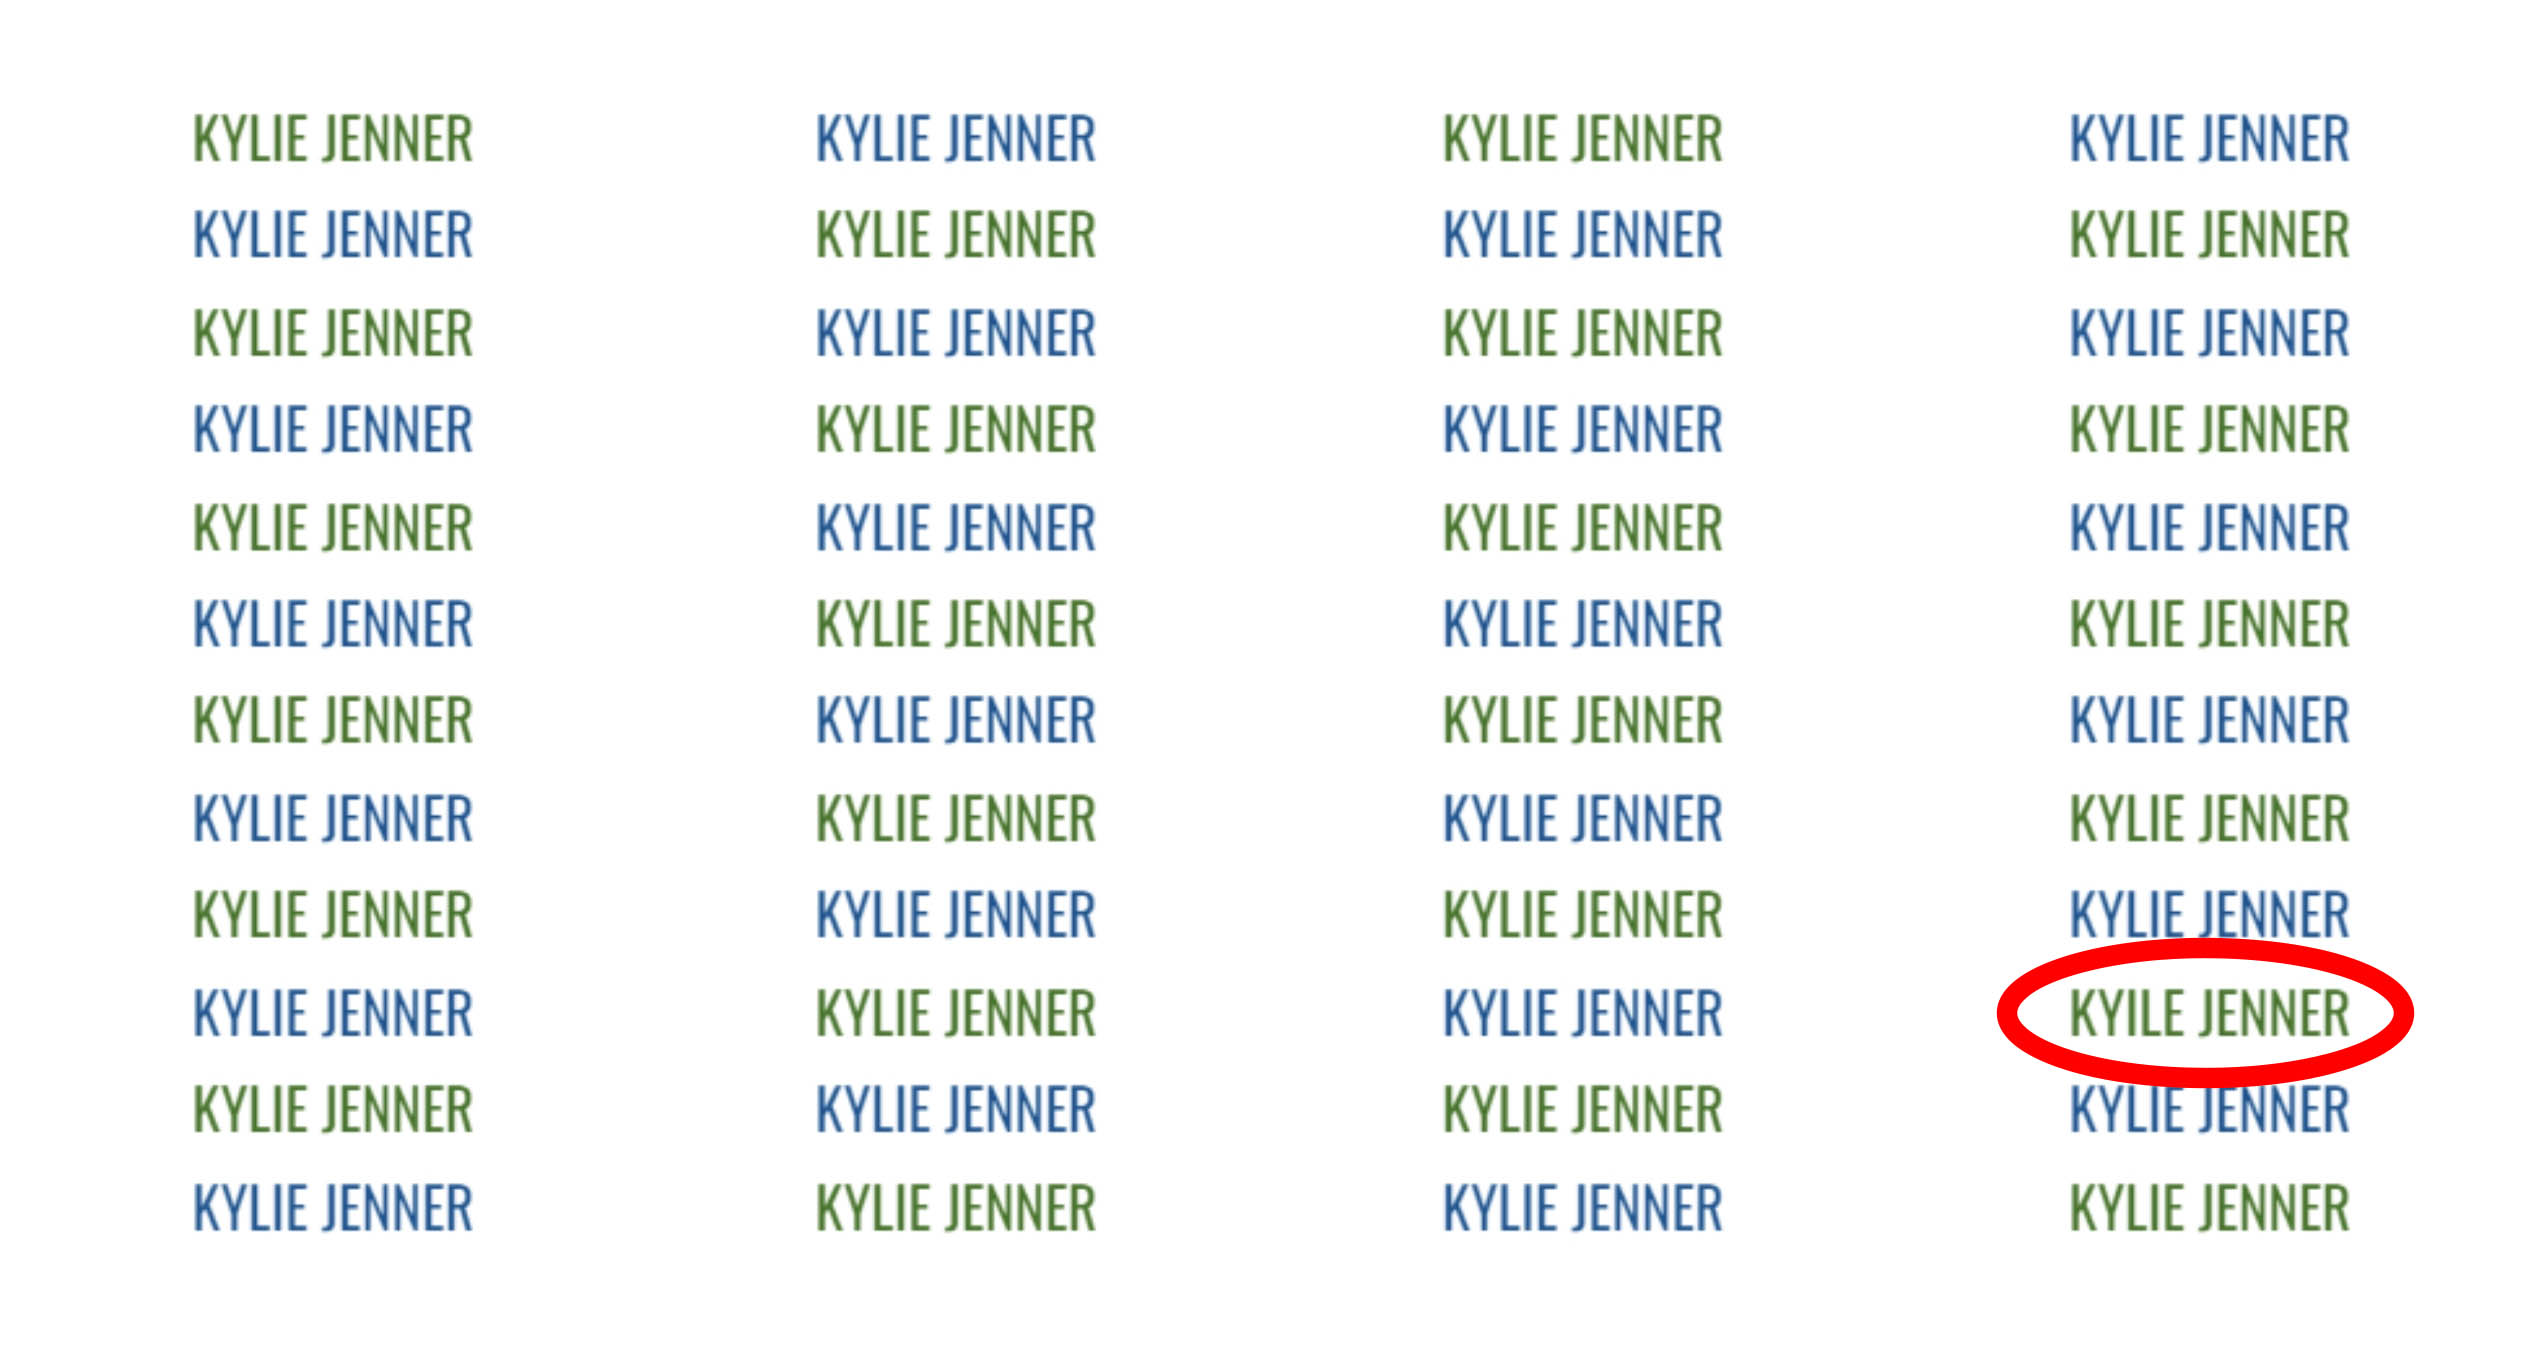 Der Name des Schönheitsmoguls ist in der vierten Zeile des Bildes falsch geschrieben als Kyile Jenner